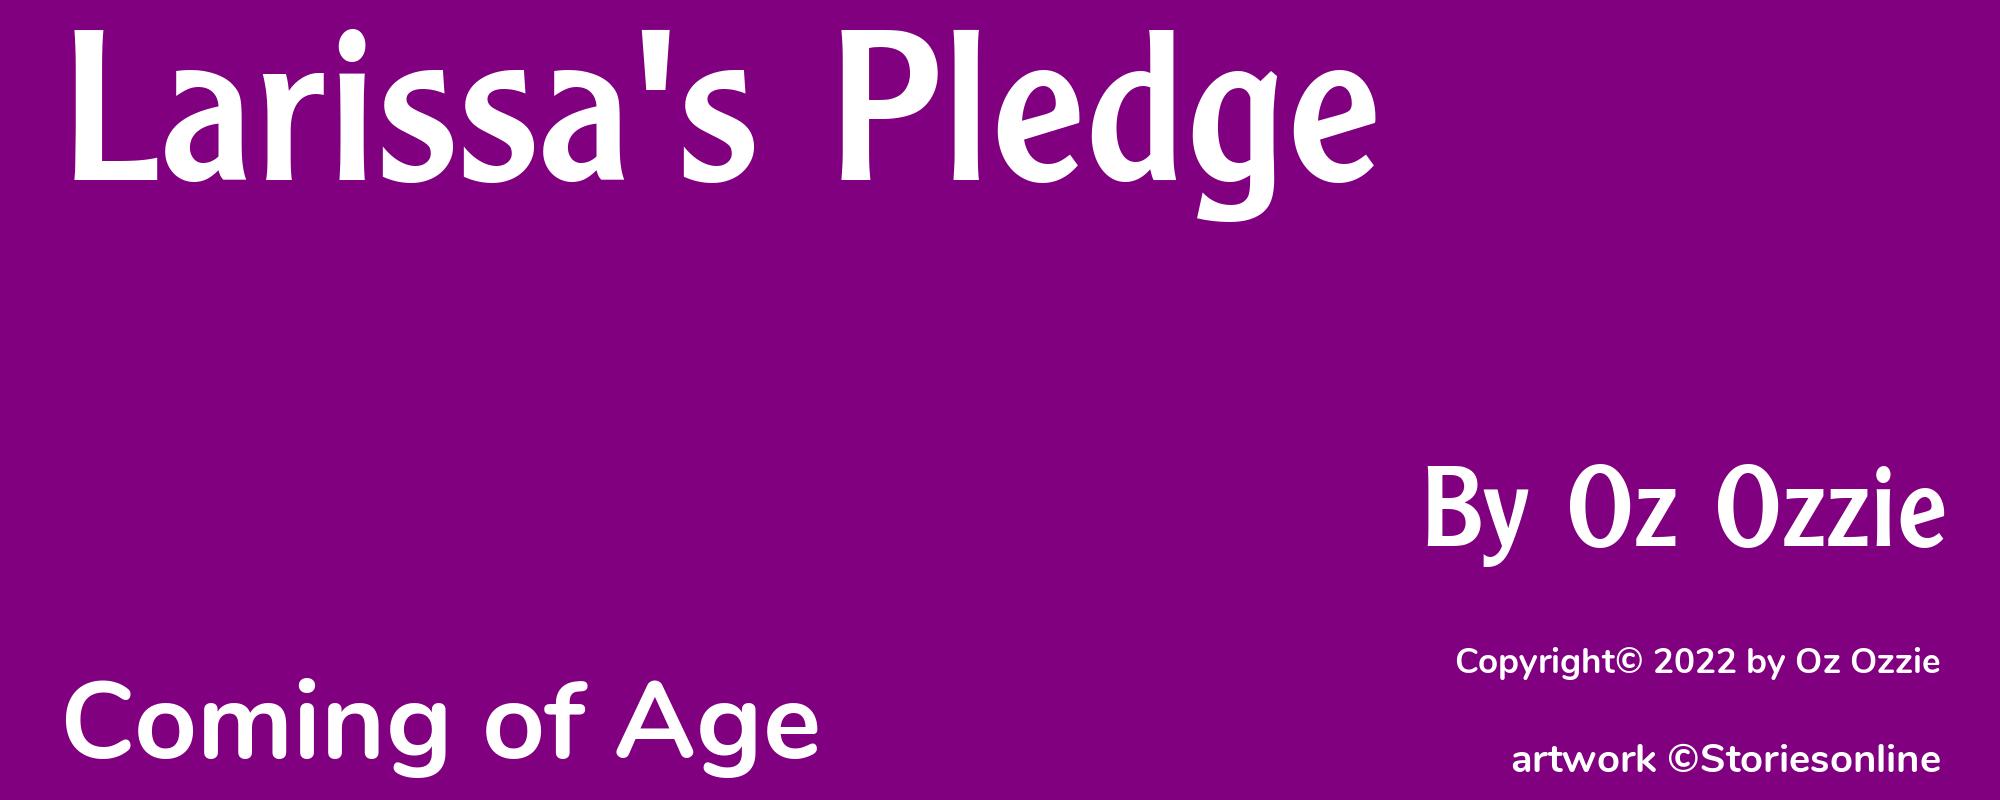 Larissa's Pledge - Cover